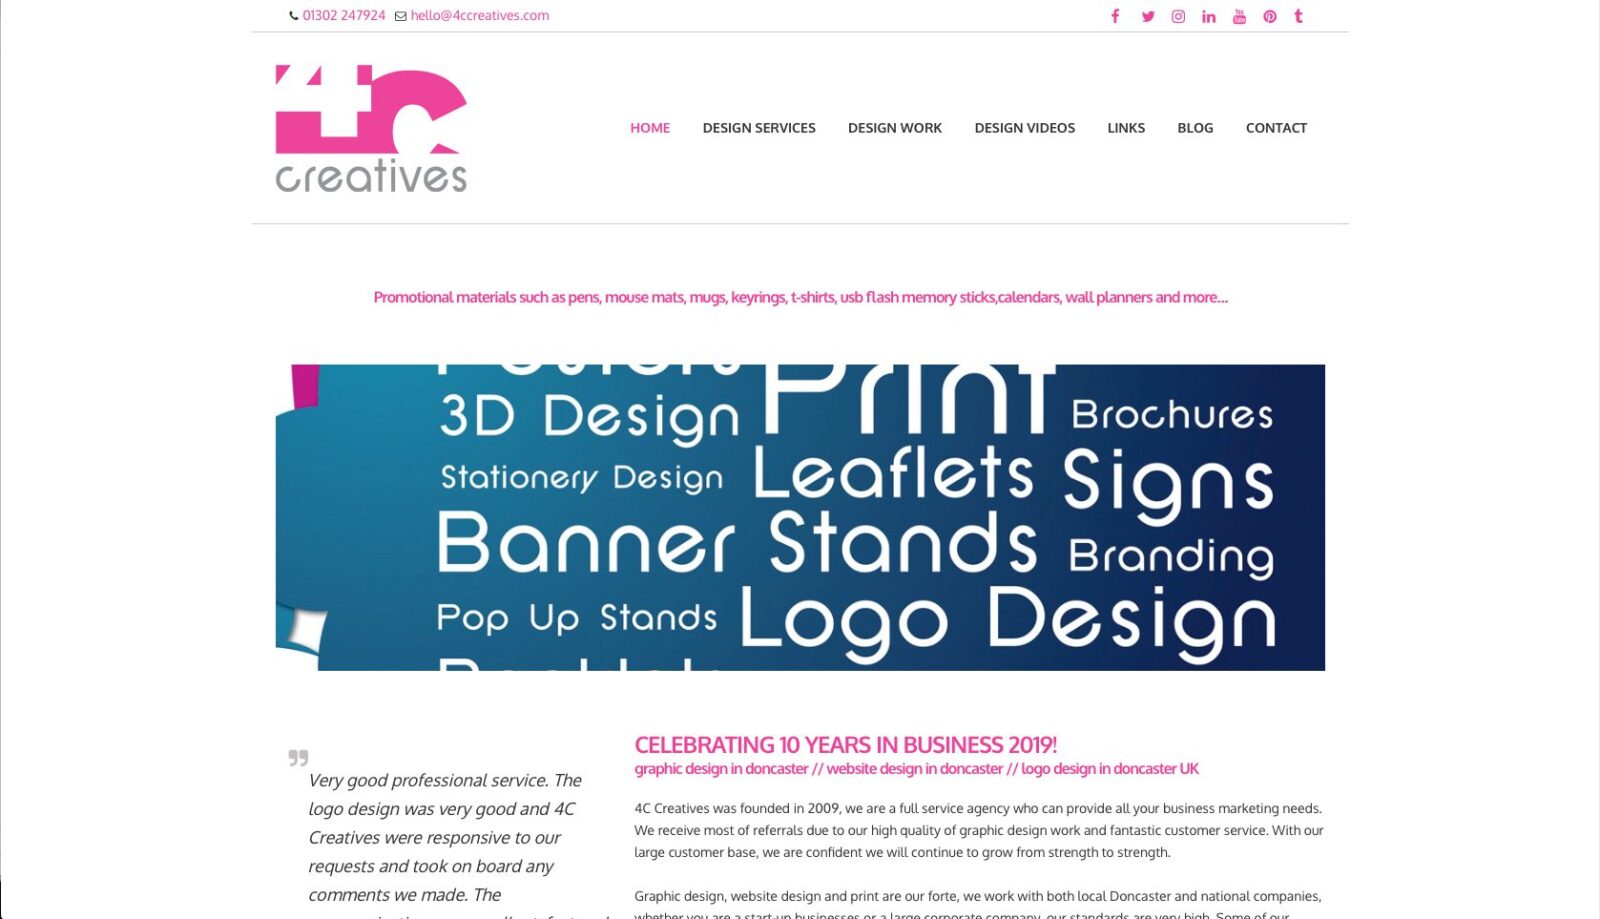 4C Creatives Website Design Doncaster